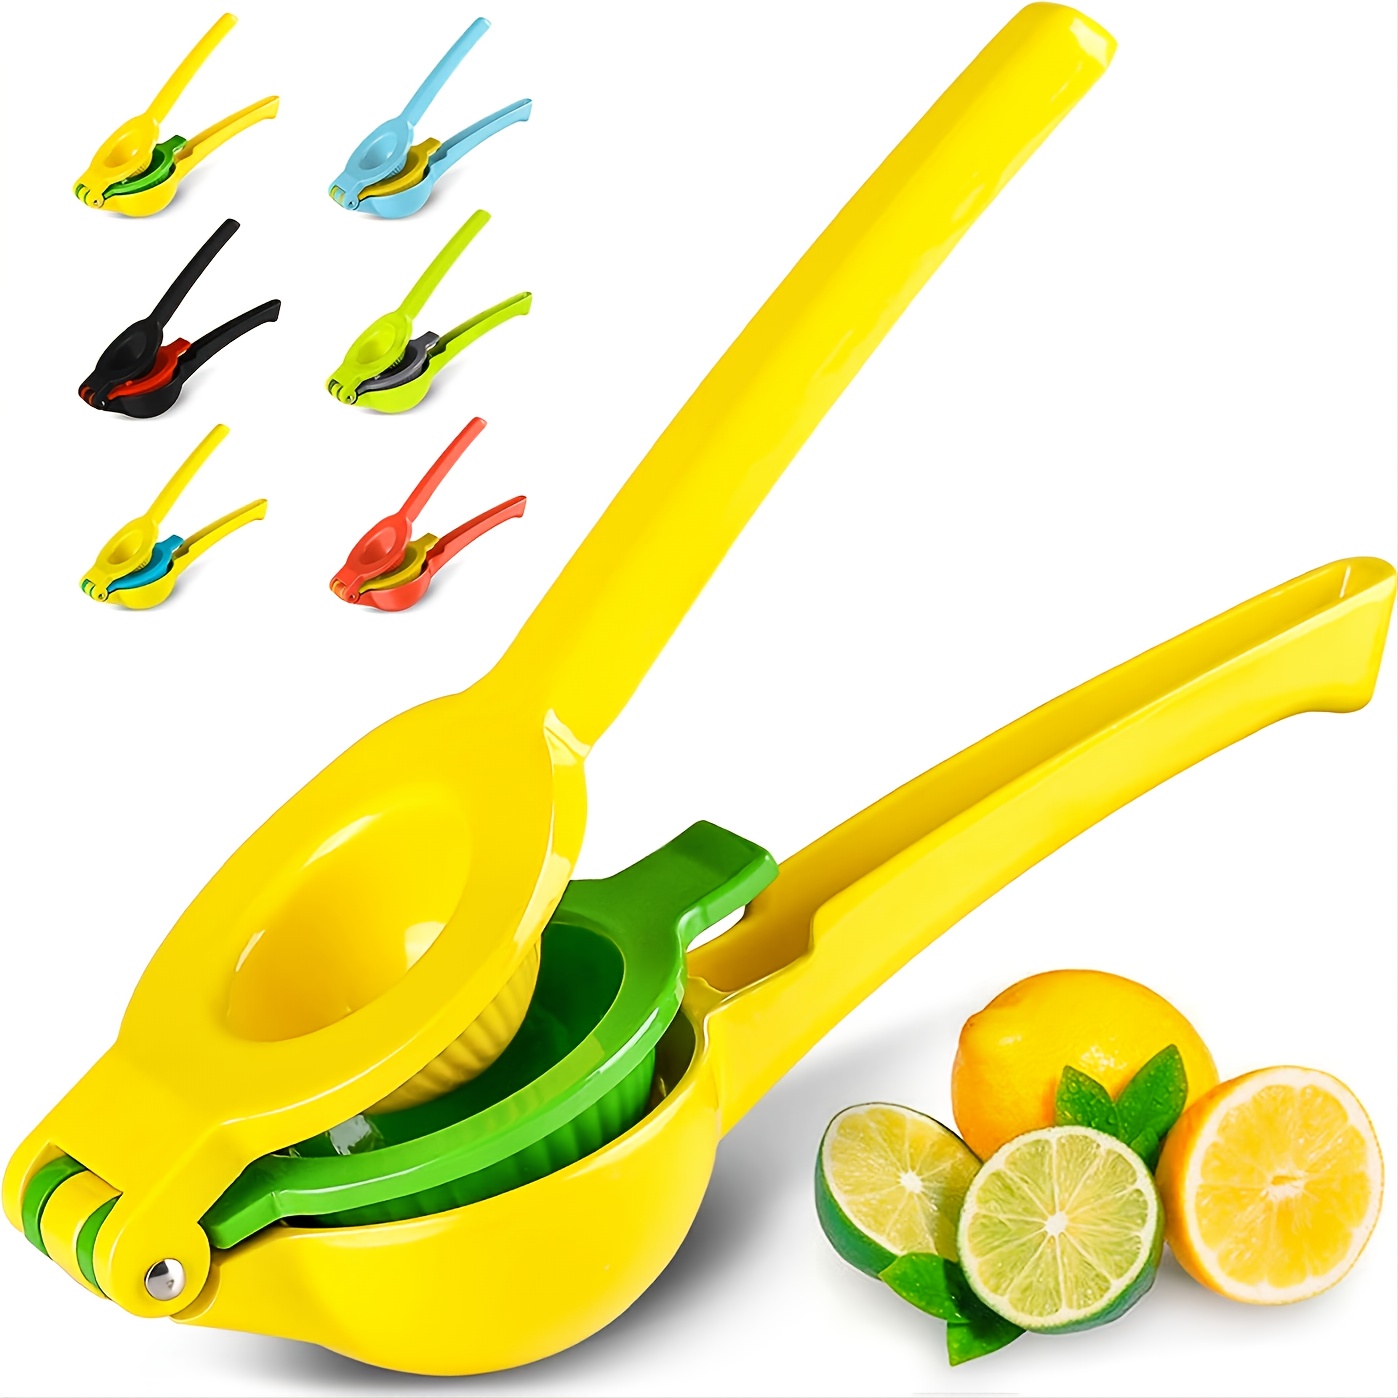 Exprimidor limón manual 2 en 1